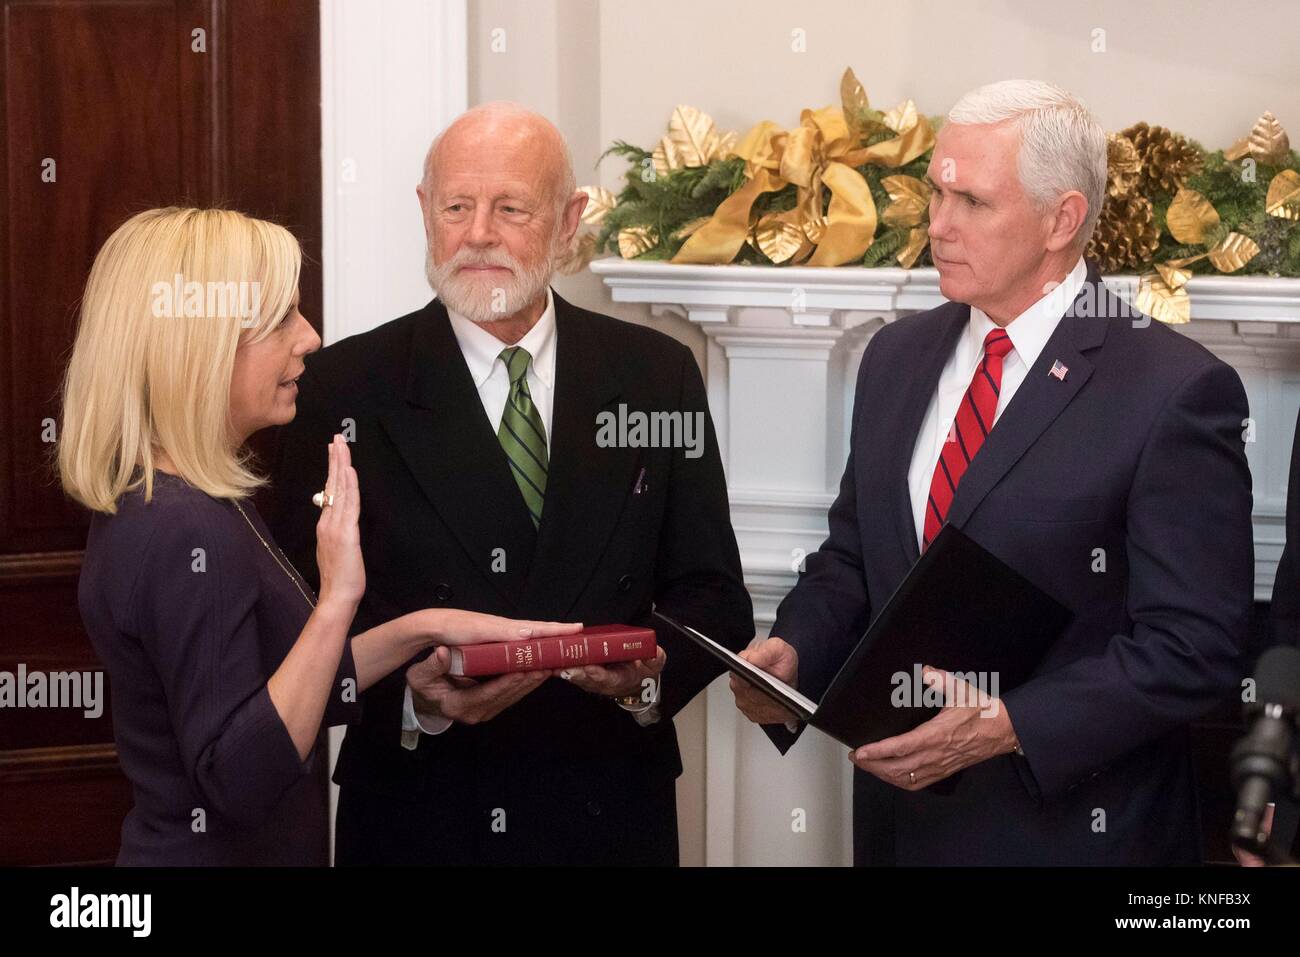 U.S. Vice President Mike Pence, Recht, verwaltet den Amtseid auf Der neue Staatssekretär für Heimatschutz Kirstjen Nielsen, Links, während einer Zeremonie im Roosevelt Raum des Weißen Hauses am 8. Dezember 2017 in Washington, DC. Stockfoto